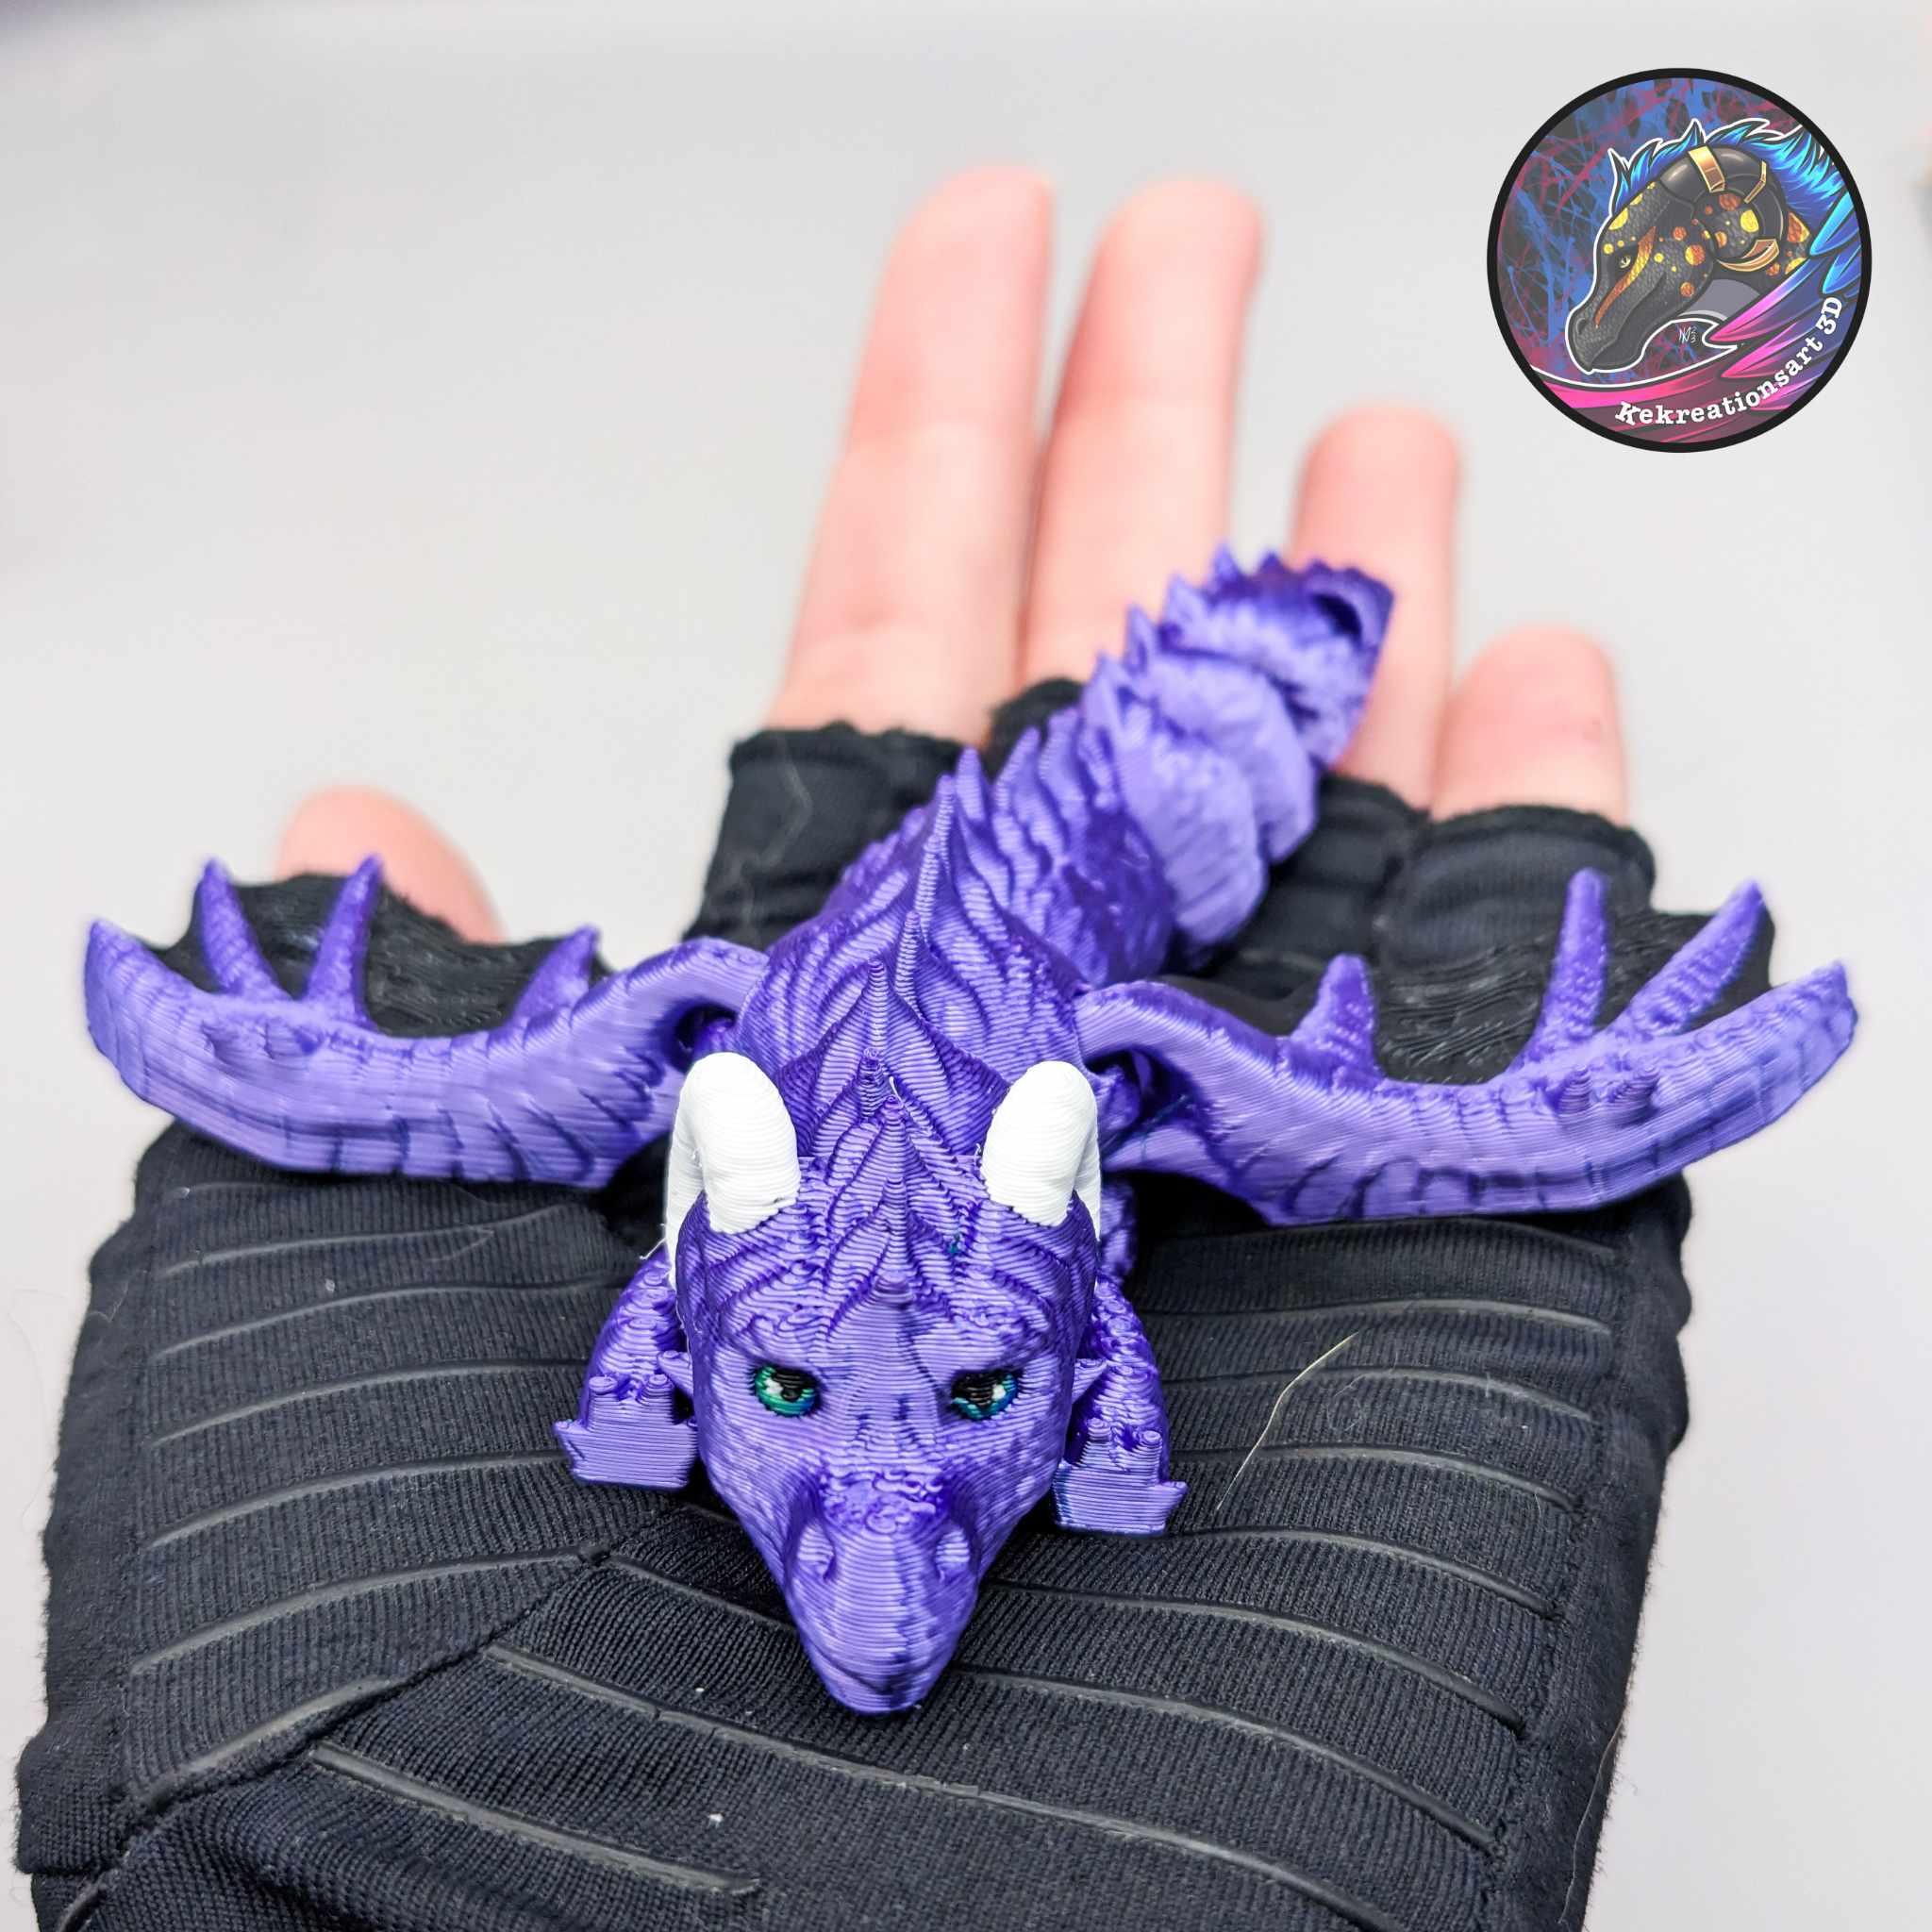 Baby Flexi Eros Dragon Keychain 3d model